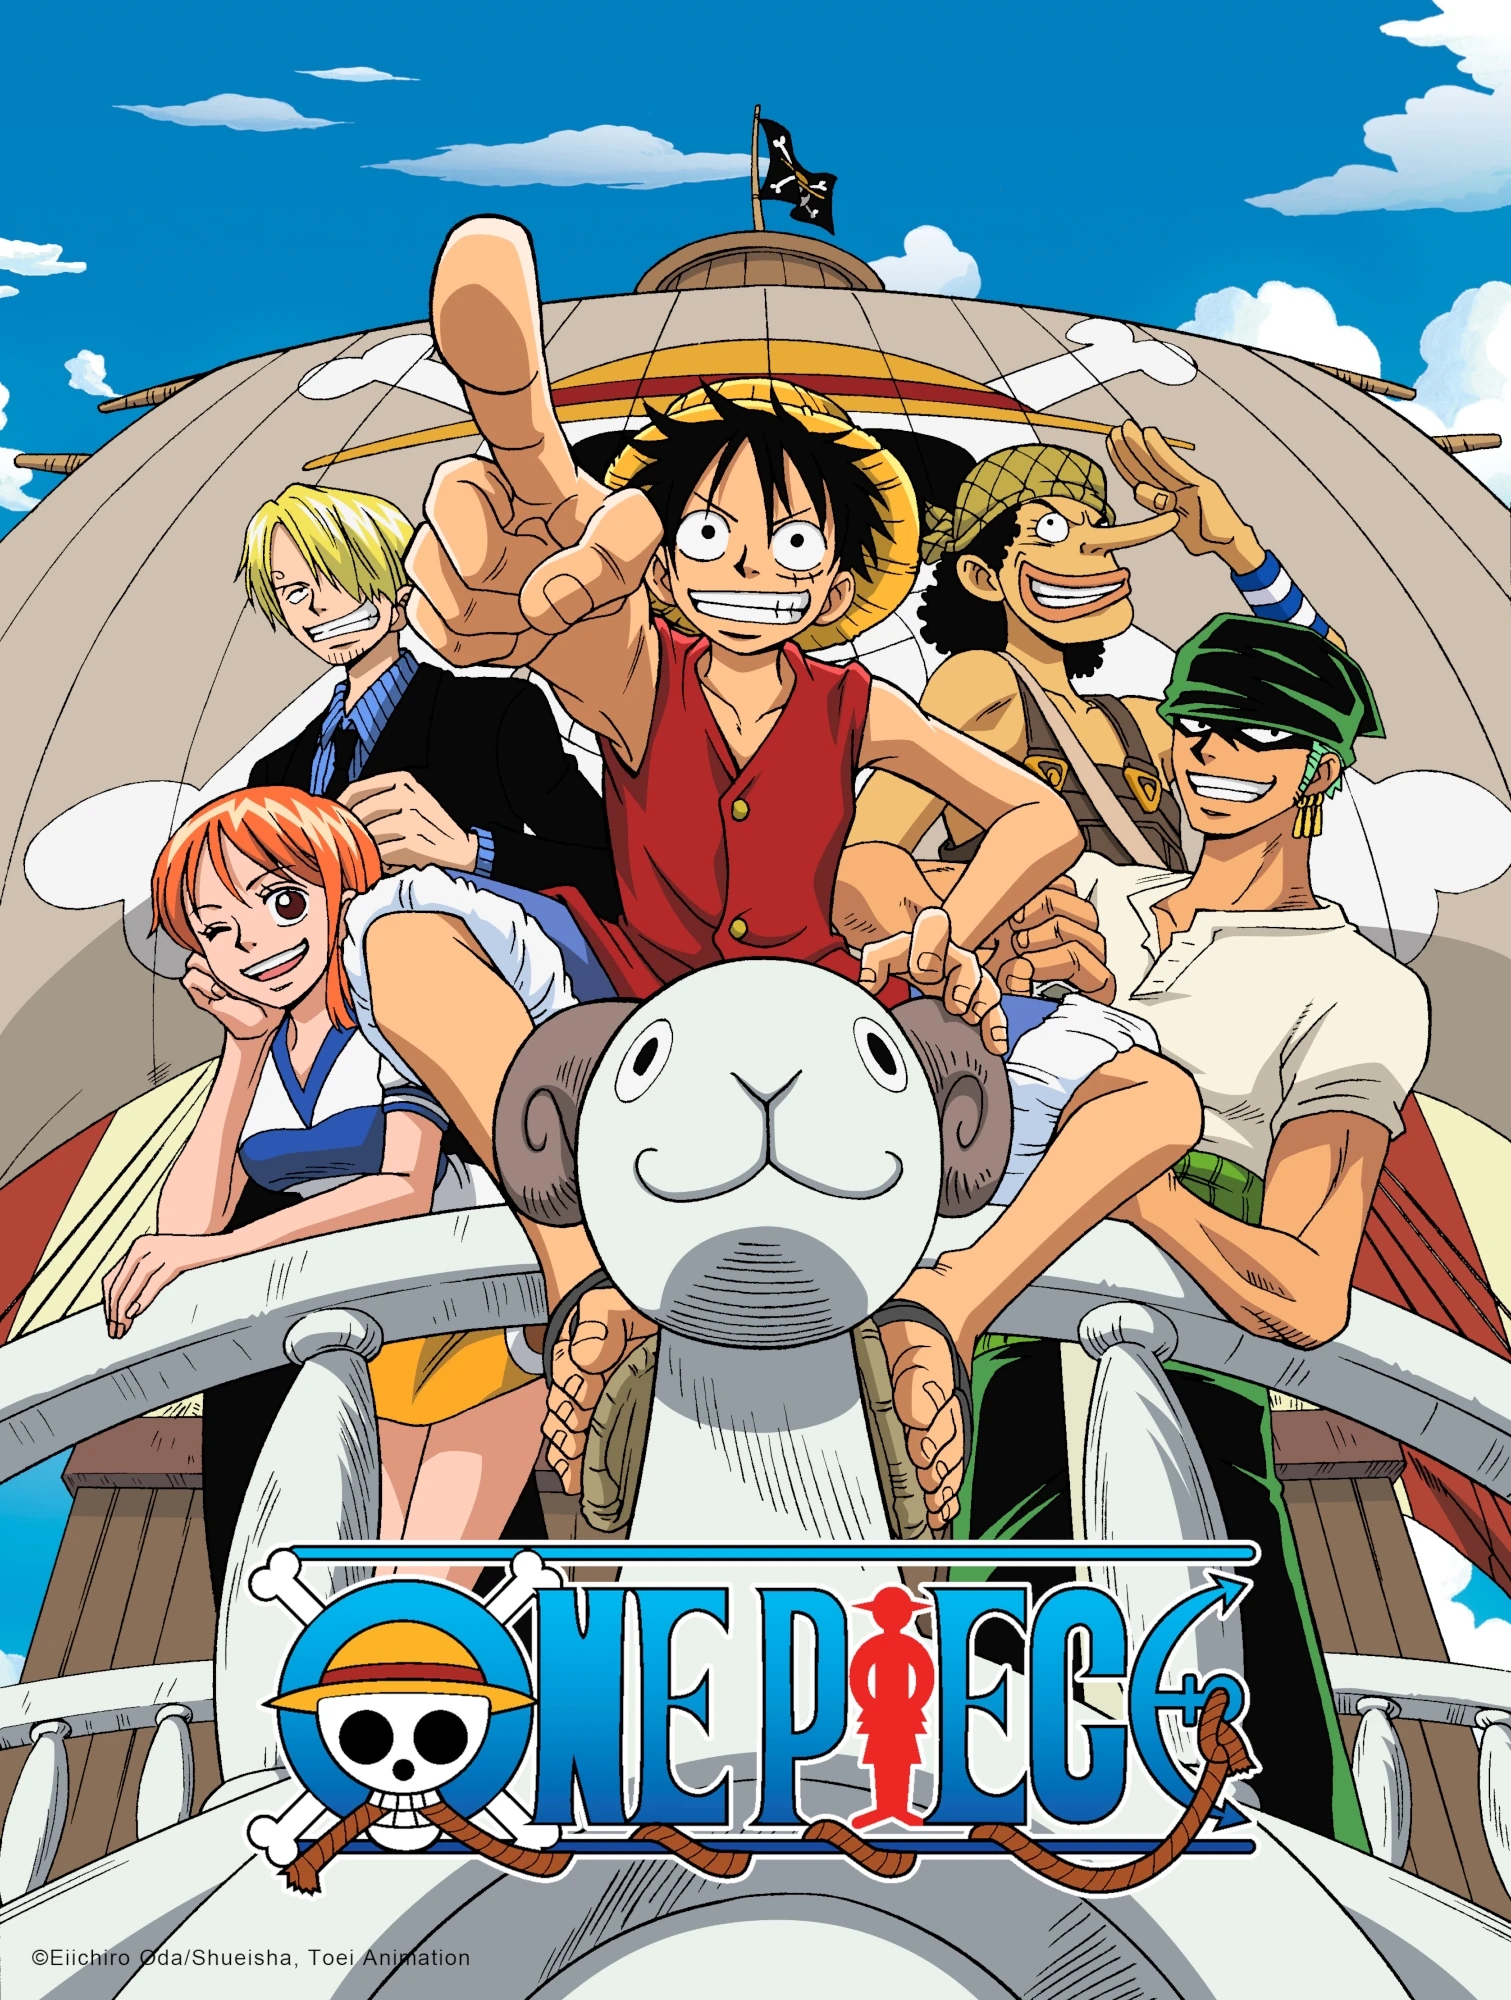 One Piece E Mais: Melhores Estreias De Filmes E Séries No